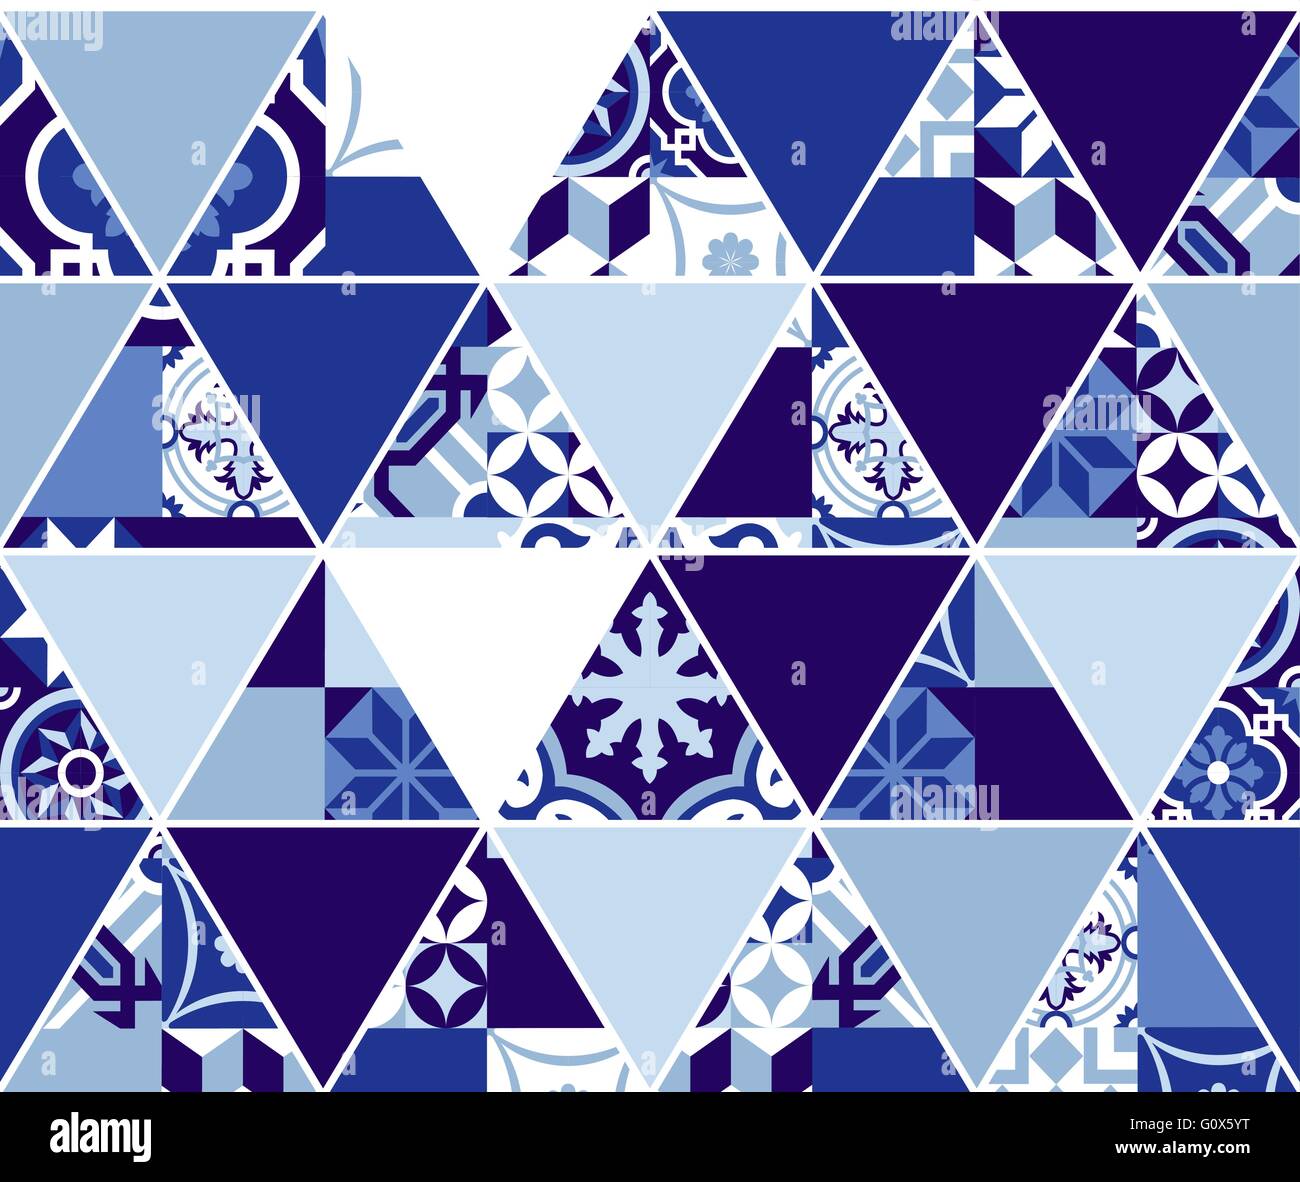 Indigo bleu motif transparent, équerre de la mosaïque dans le style classique de l'art portugais. Vecteur EPS10. Illustration de Vecteur